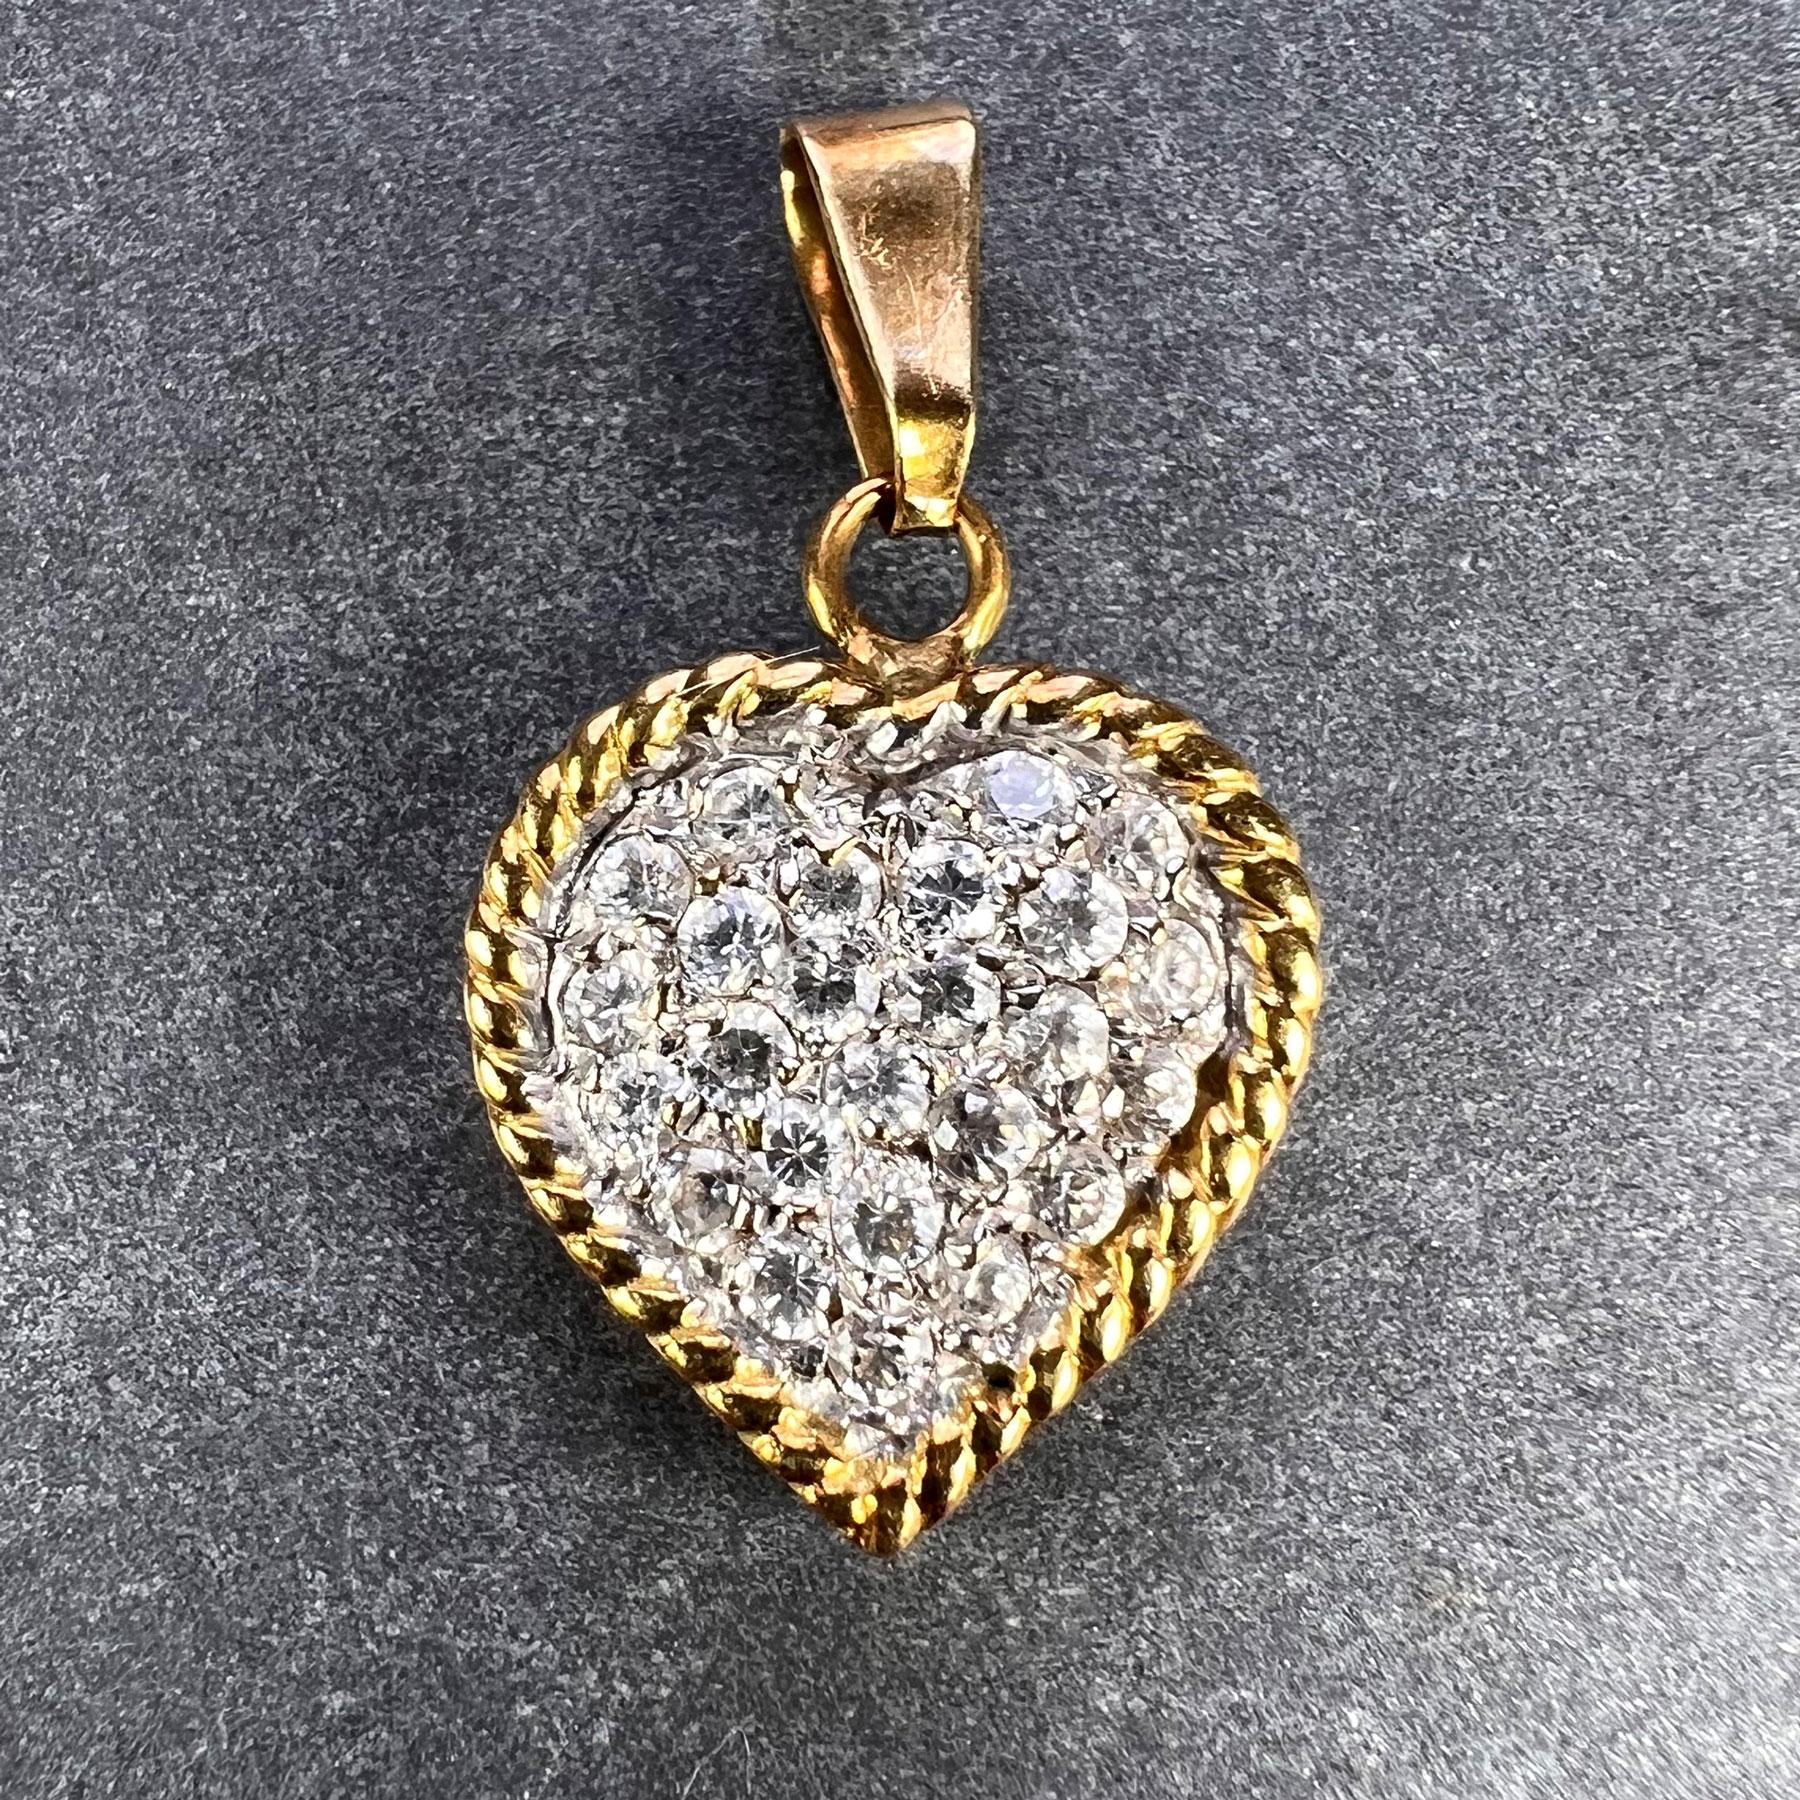 Un pendentif italien en or jaune et blanc 18 carats (18K) conçu comme un cœur d'amour serti de 25 diamants blancs ronds de taille brillant avec un poids total approximatif de 0,75 carat. Estampillée 750 pour l'or 18 carats et la fabrication